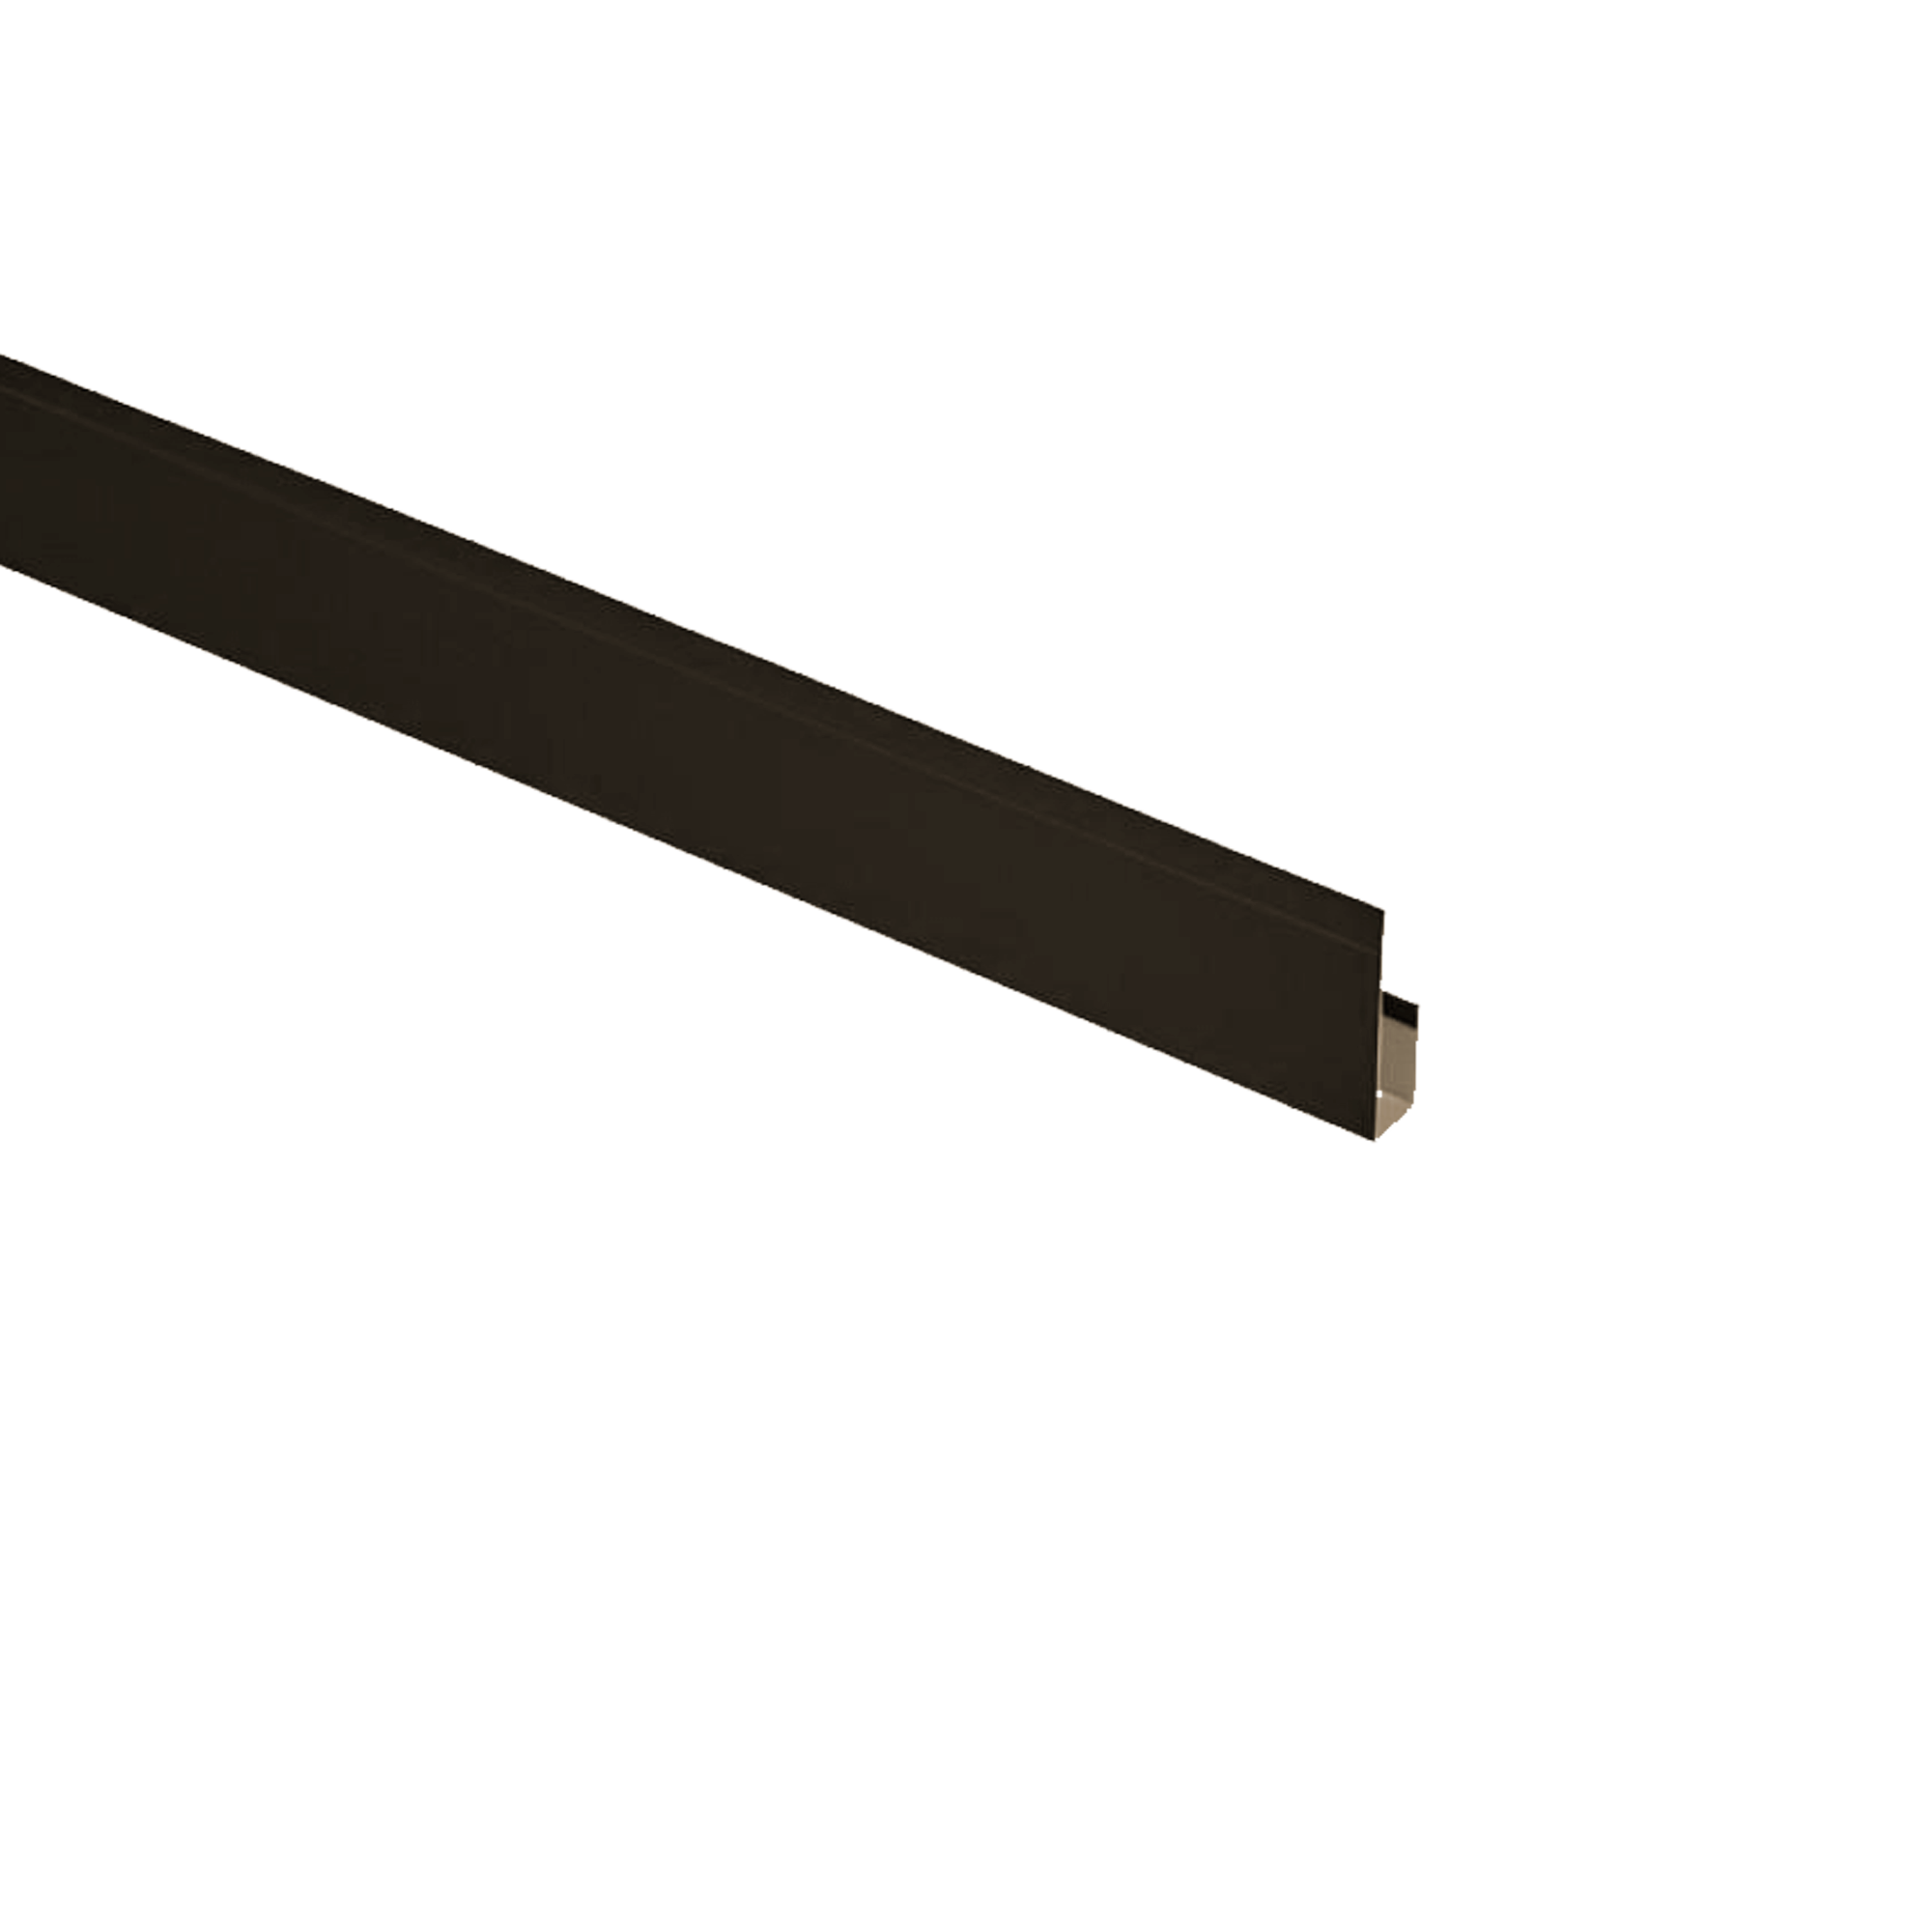 Планка завершающая Брусnika Шоколадно-глянцевый 0,45 мм Полиэстер Доборные элементы для сайдинга Кровля Сервис